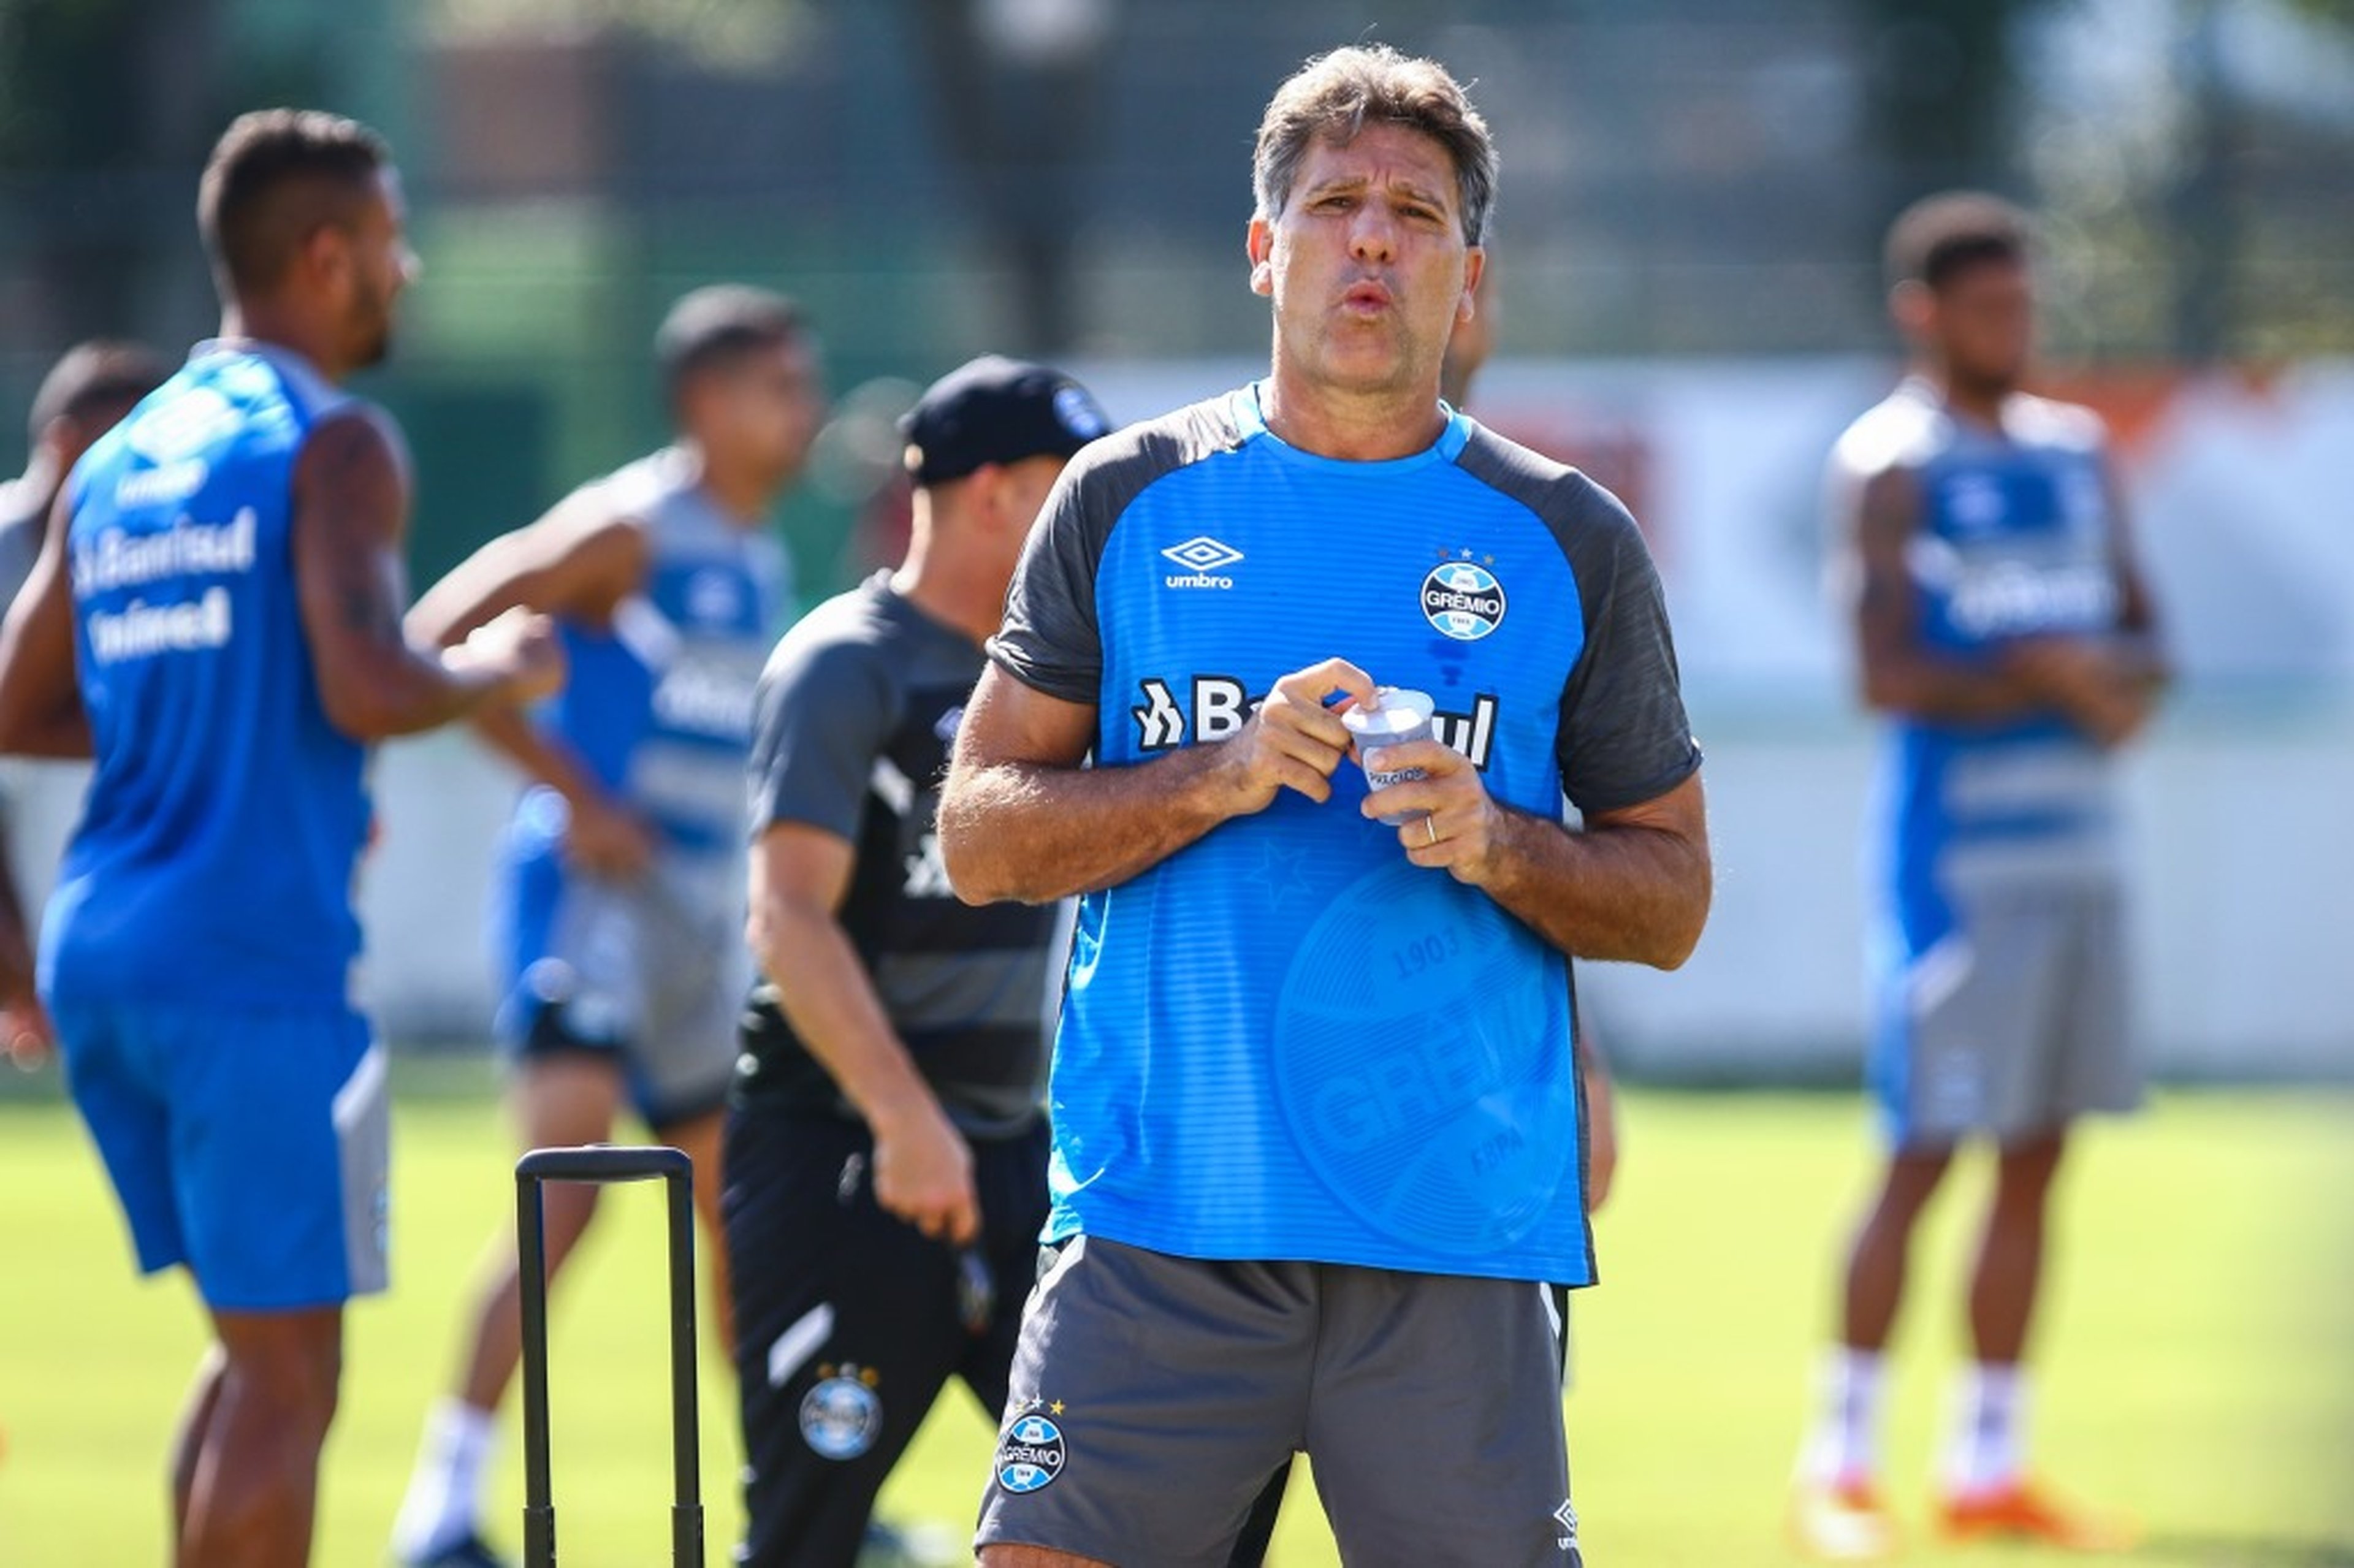 Lucas Uebel/Divulgação Grêmio